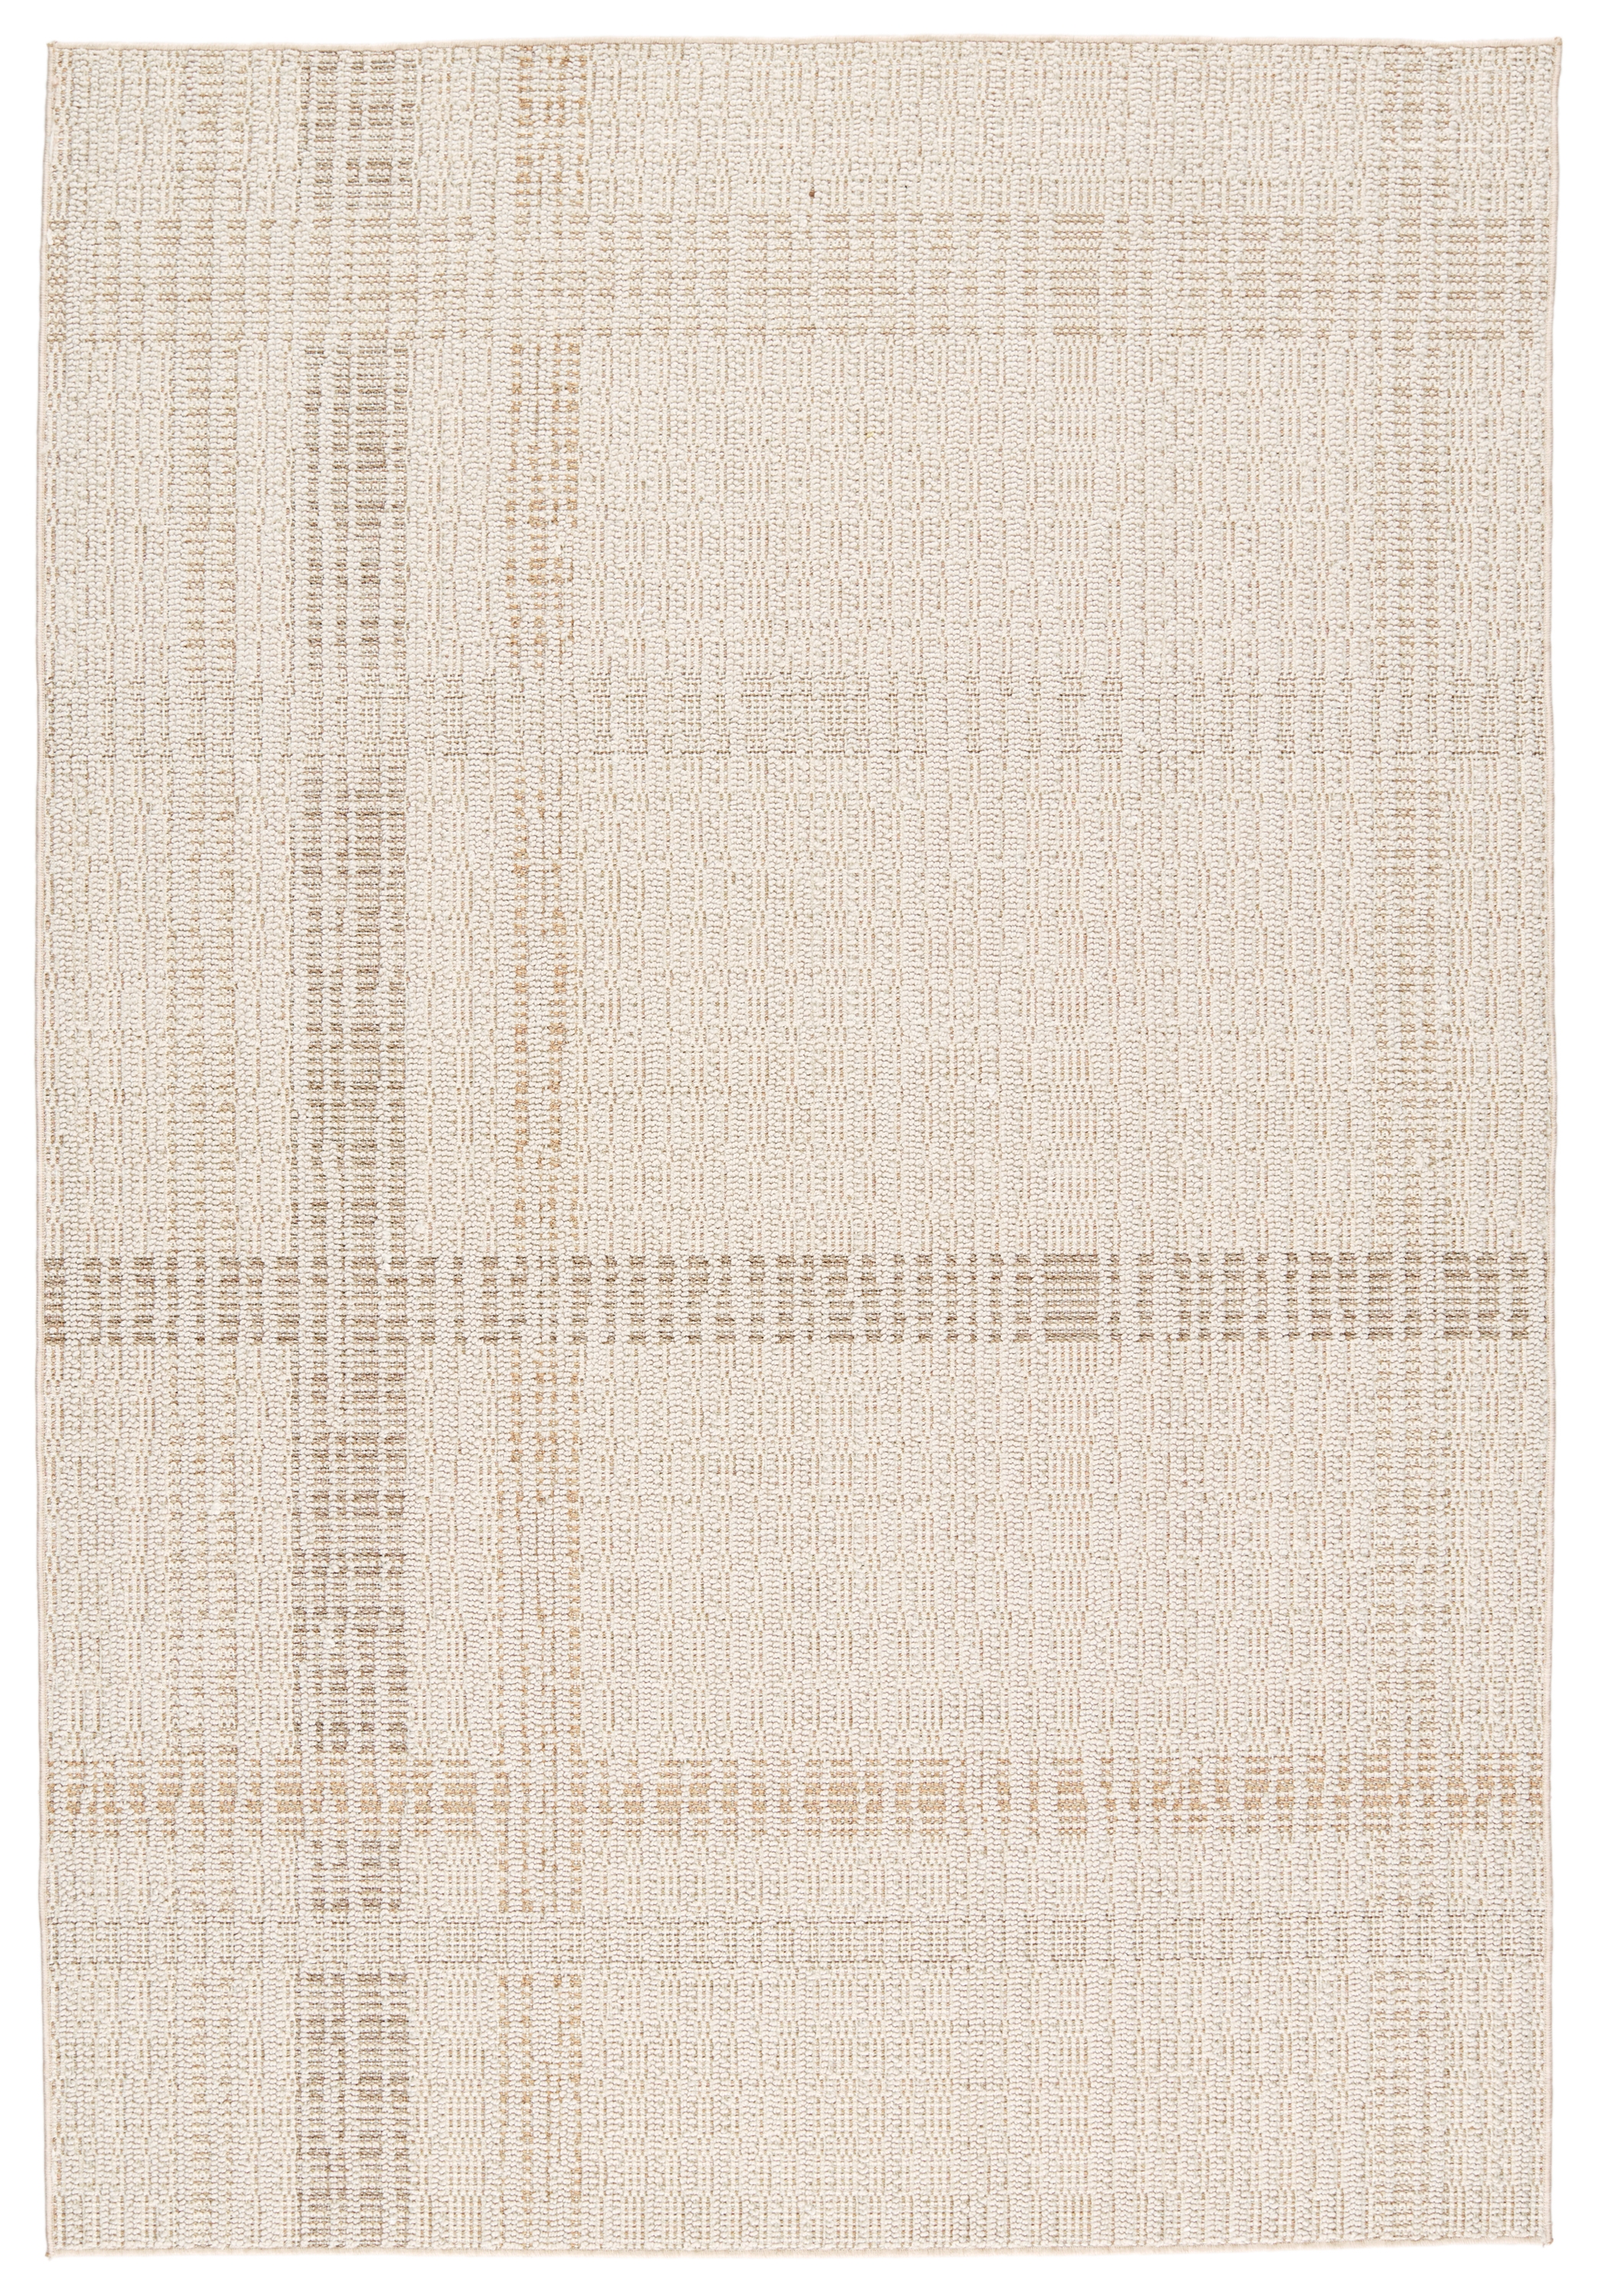 Aeor Indoor/ Outdoor Striped Area Rug, Beige & Light Brown, 6' x 9' - Image 0